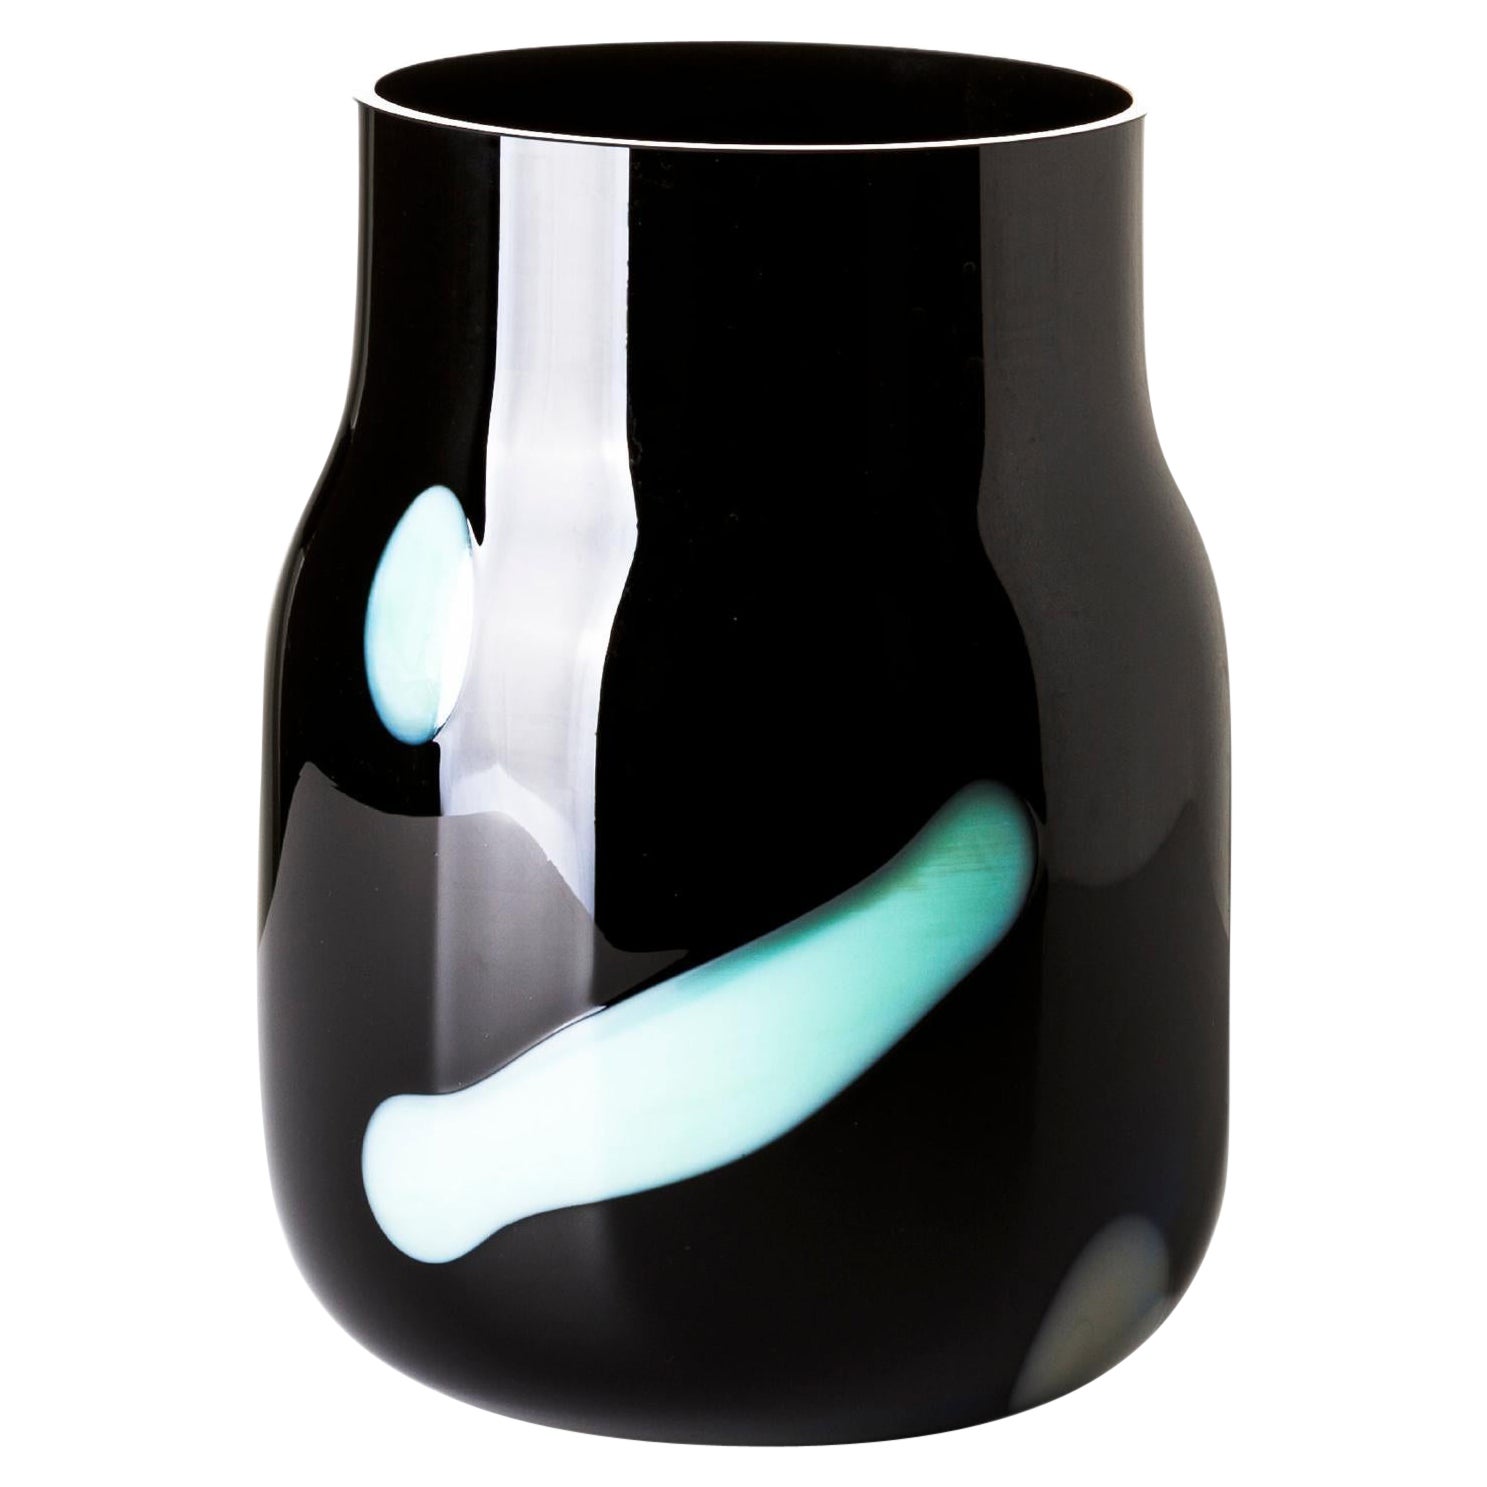 Big Bandaska Postmodern Vase by Dechem Studio